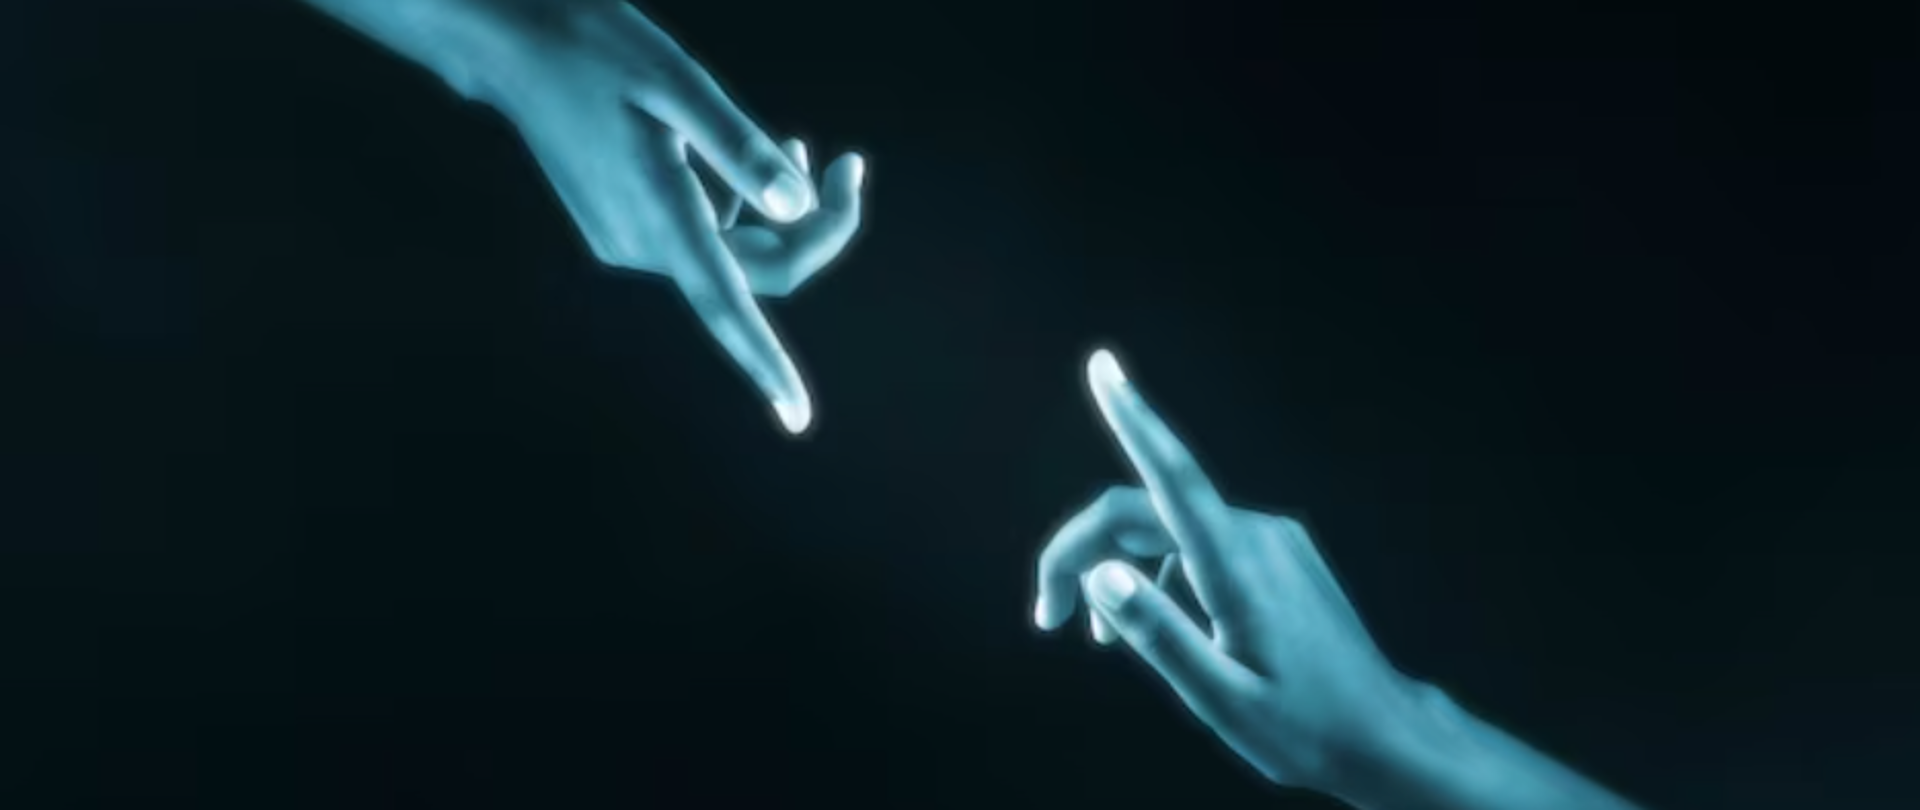 Zdjęcie dwóch dłoni z wyciągniętymi palcami wskazującymi